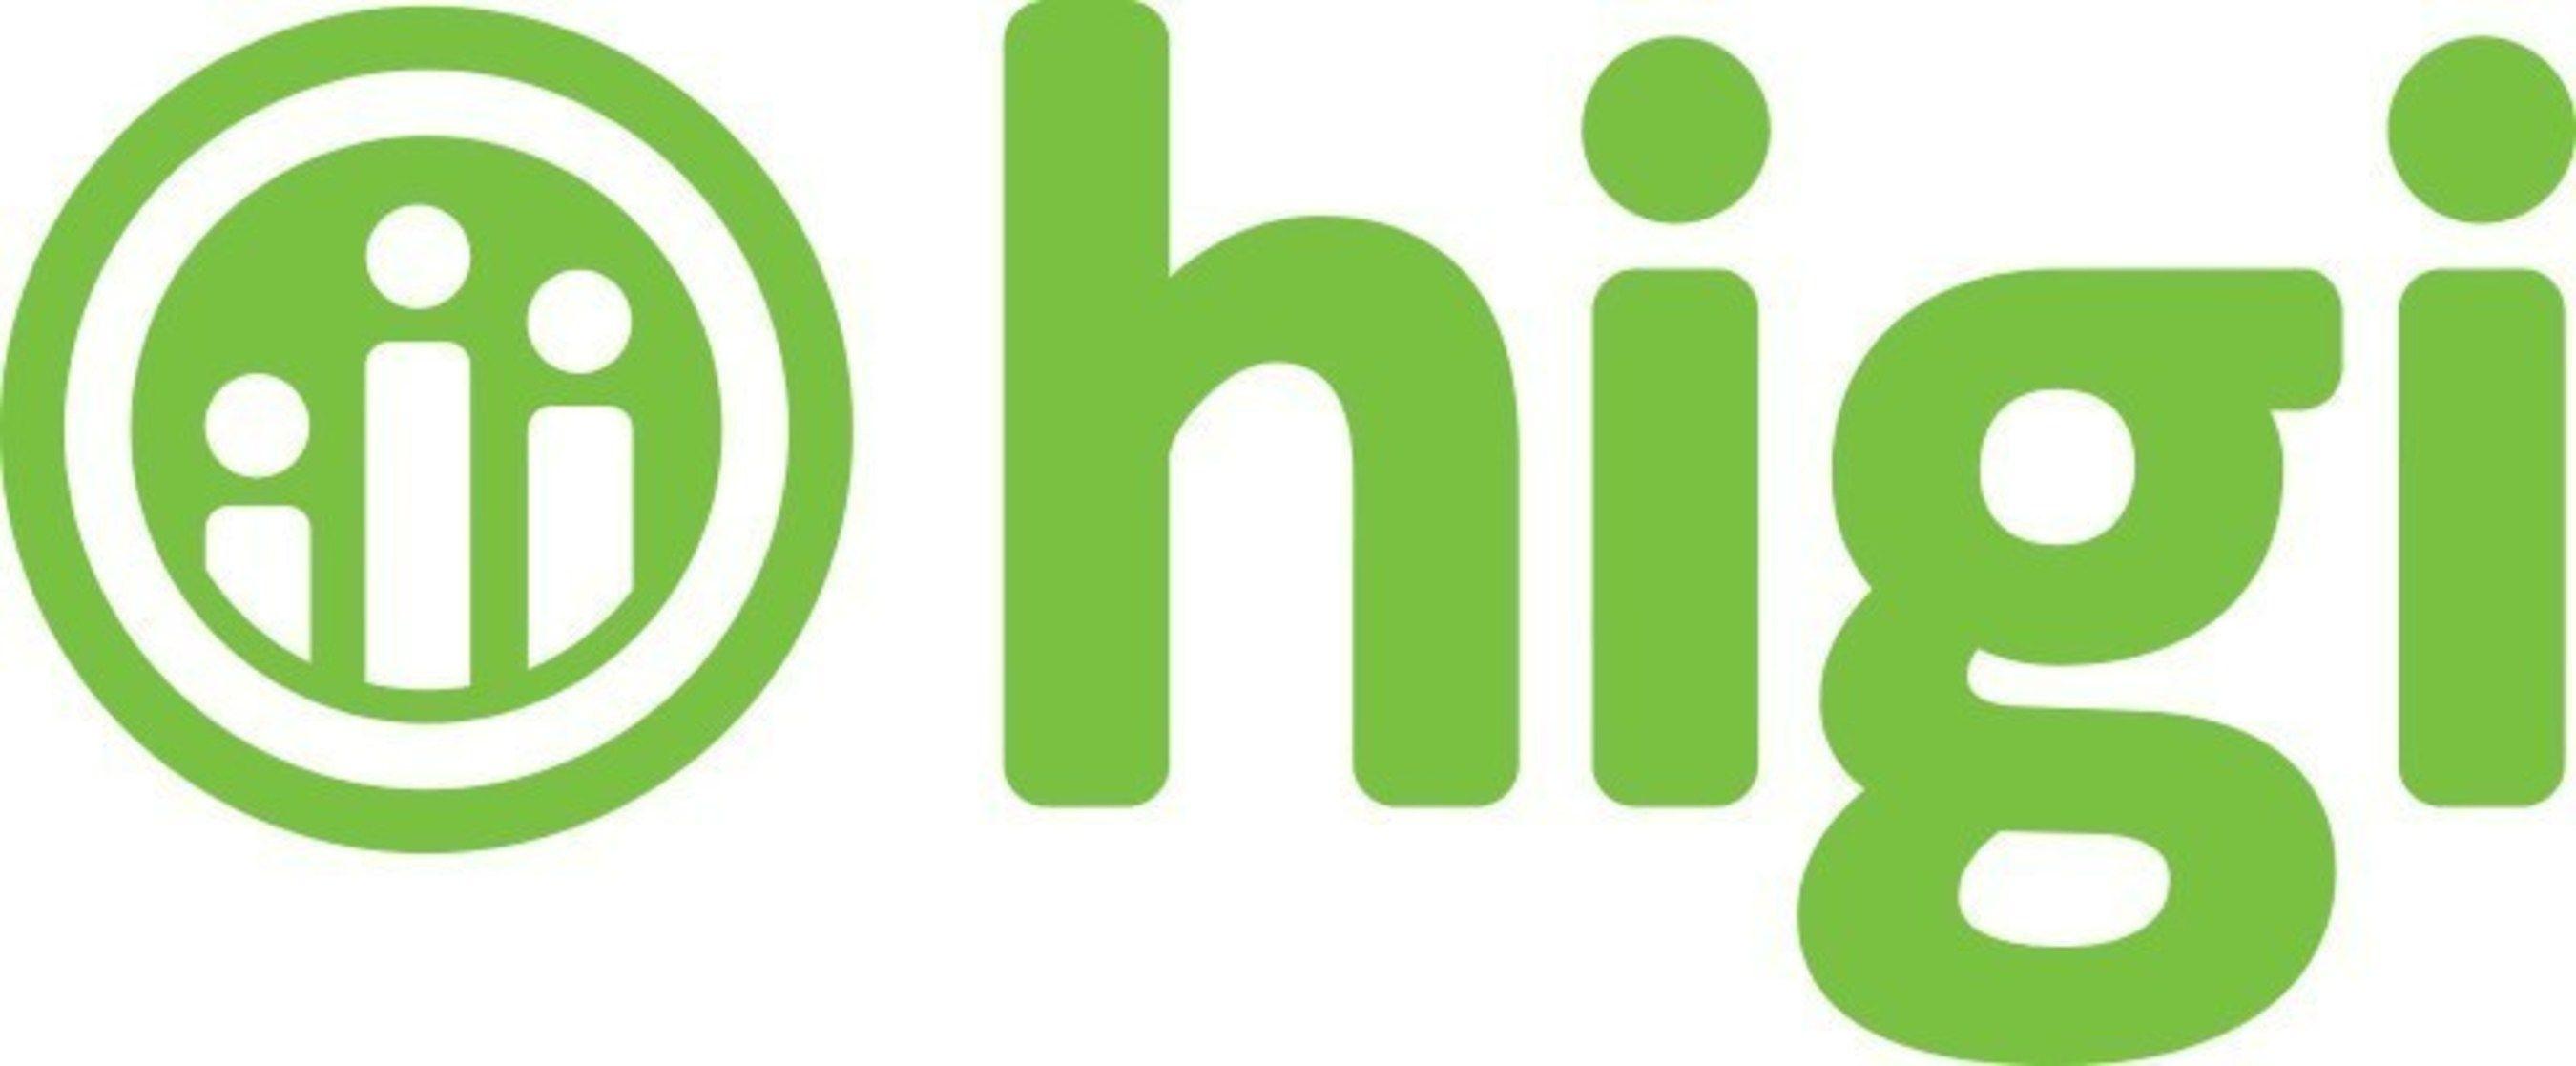 Shopko.com Logo - higi Announces New Partnership with Shopko Stores